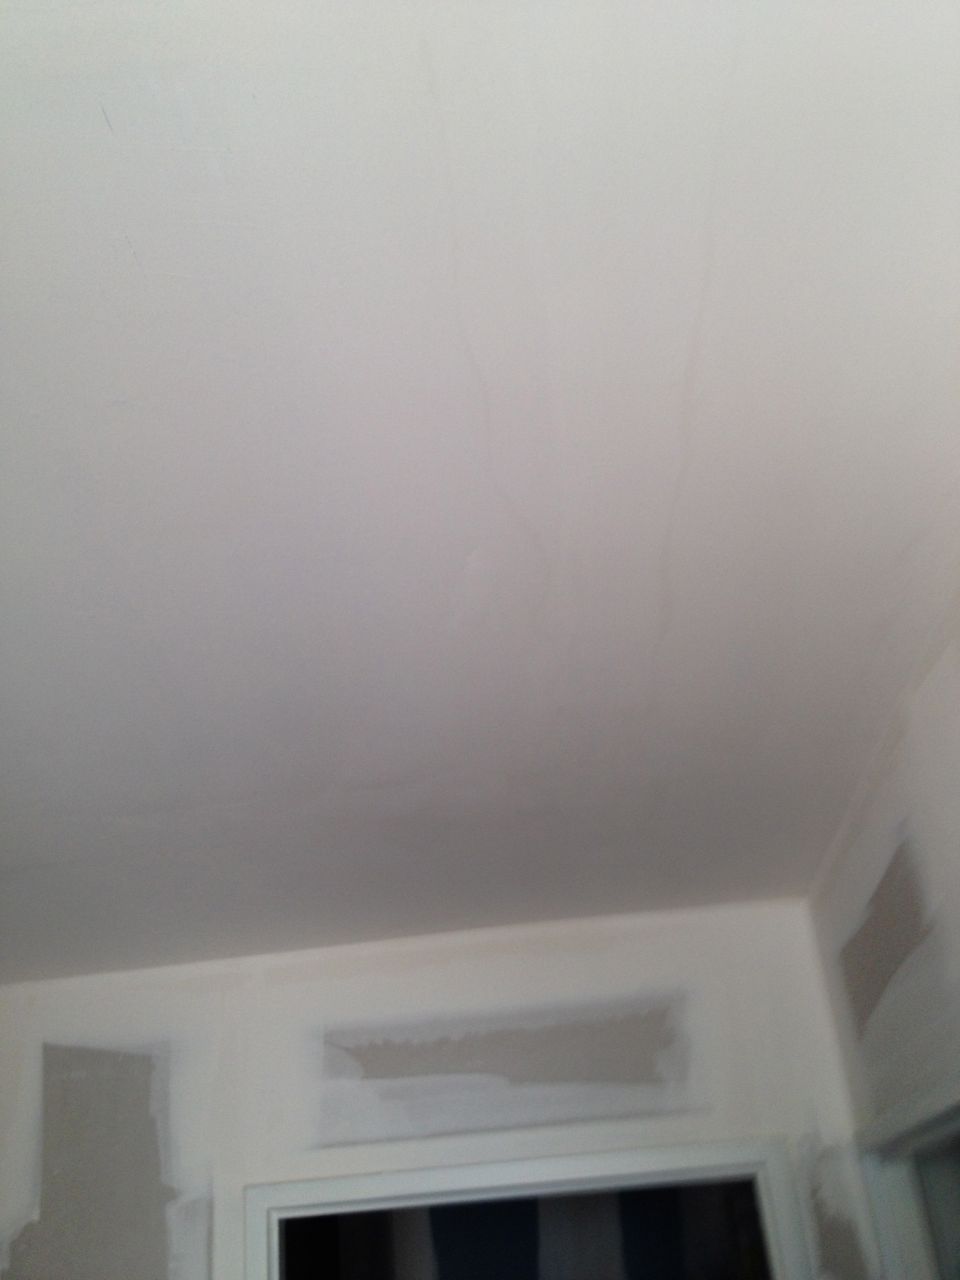 plafond rdc trace sur peinture blanche????est ce suite fissure dalle et coul de la rsine????